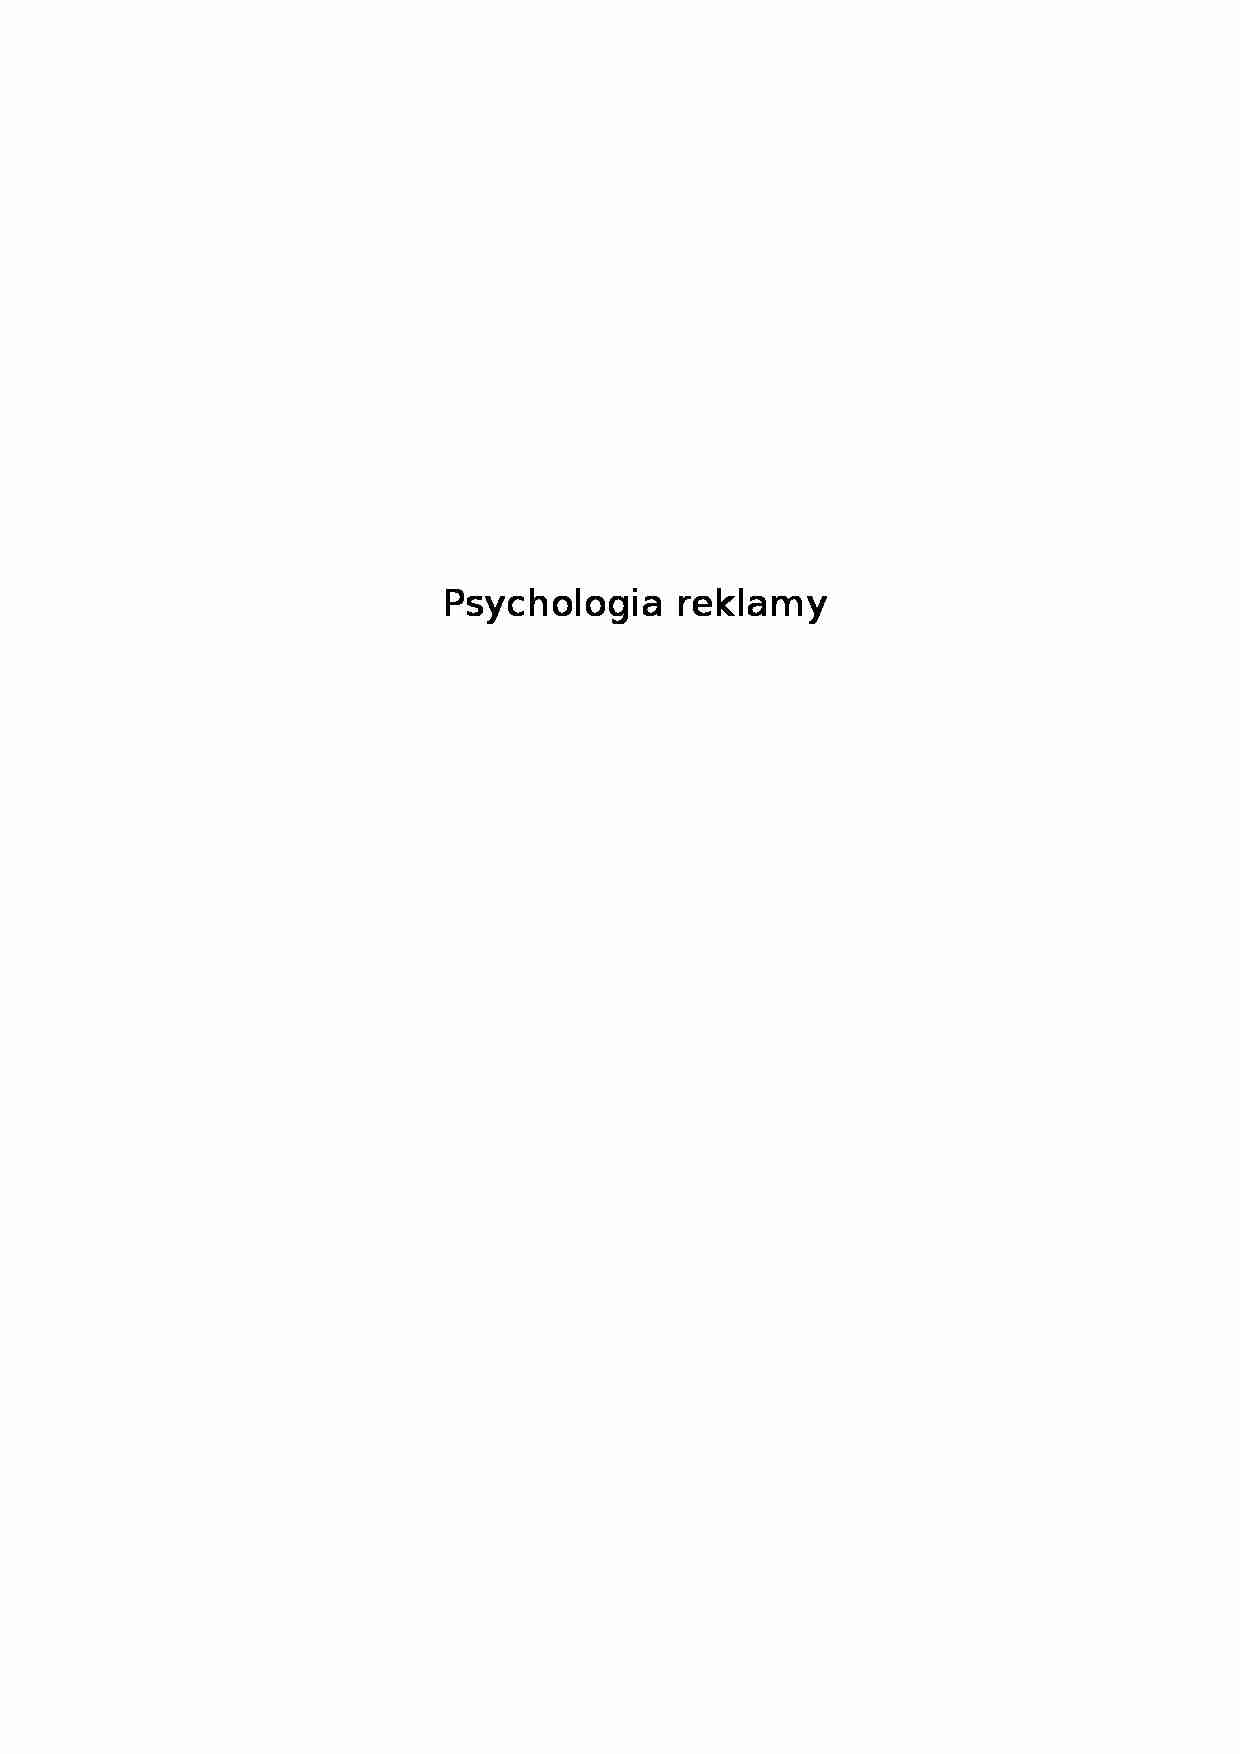 Psychologia reklamy - Emocje - strona 1